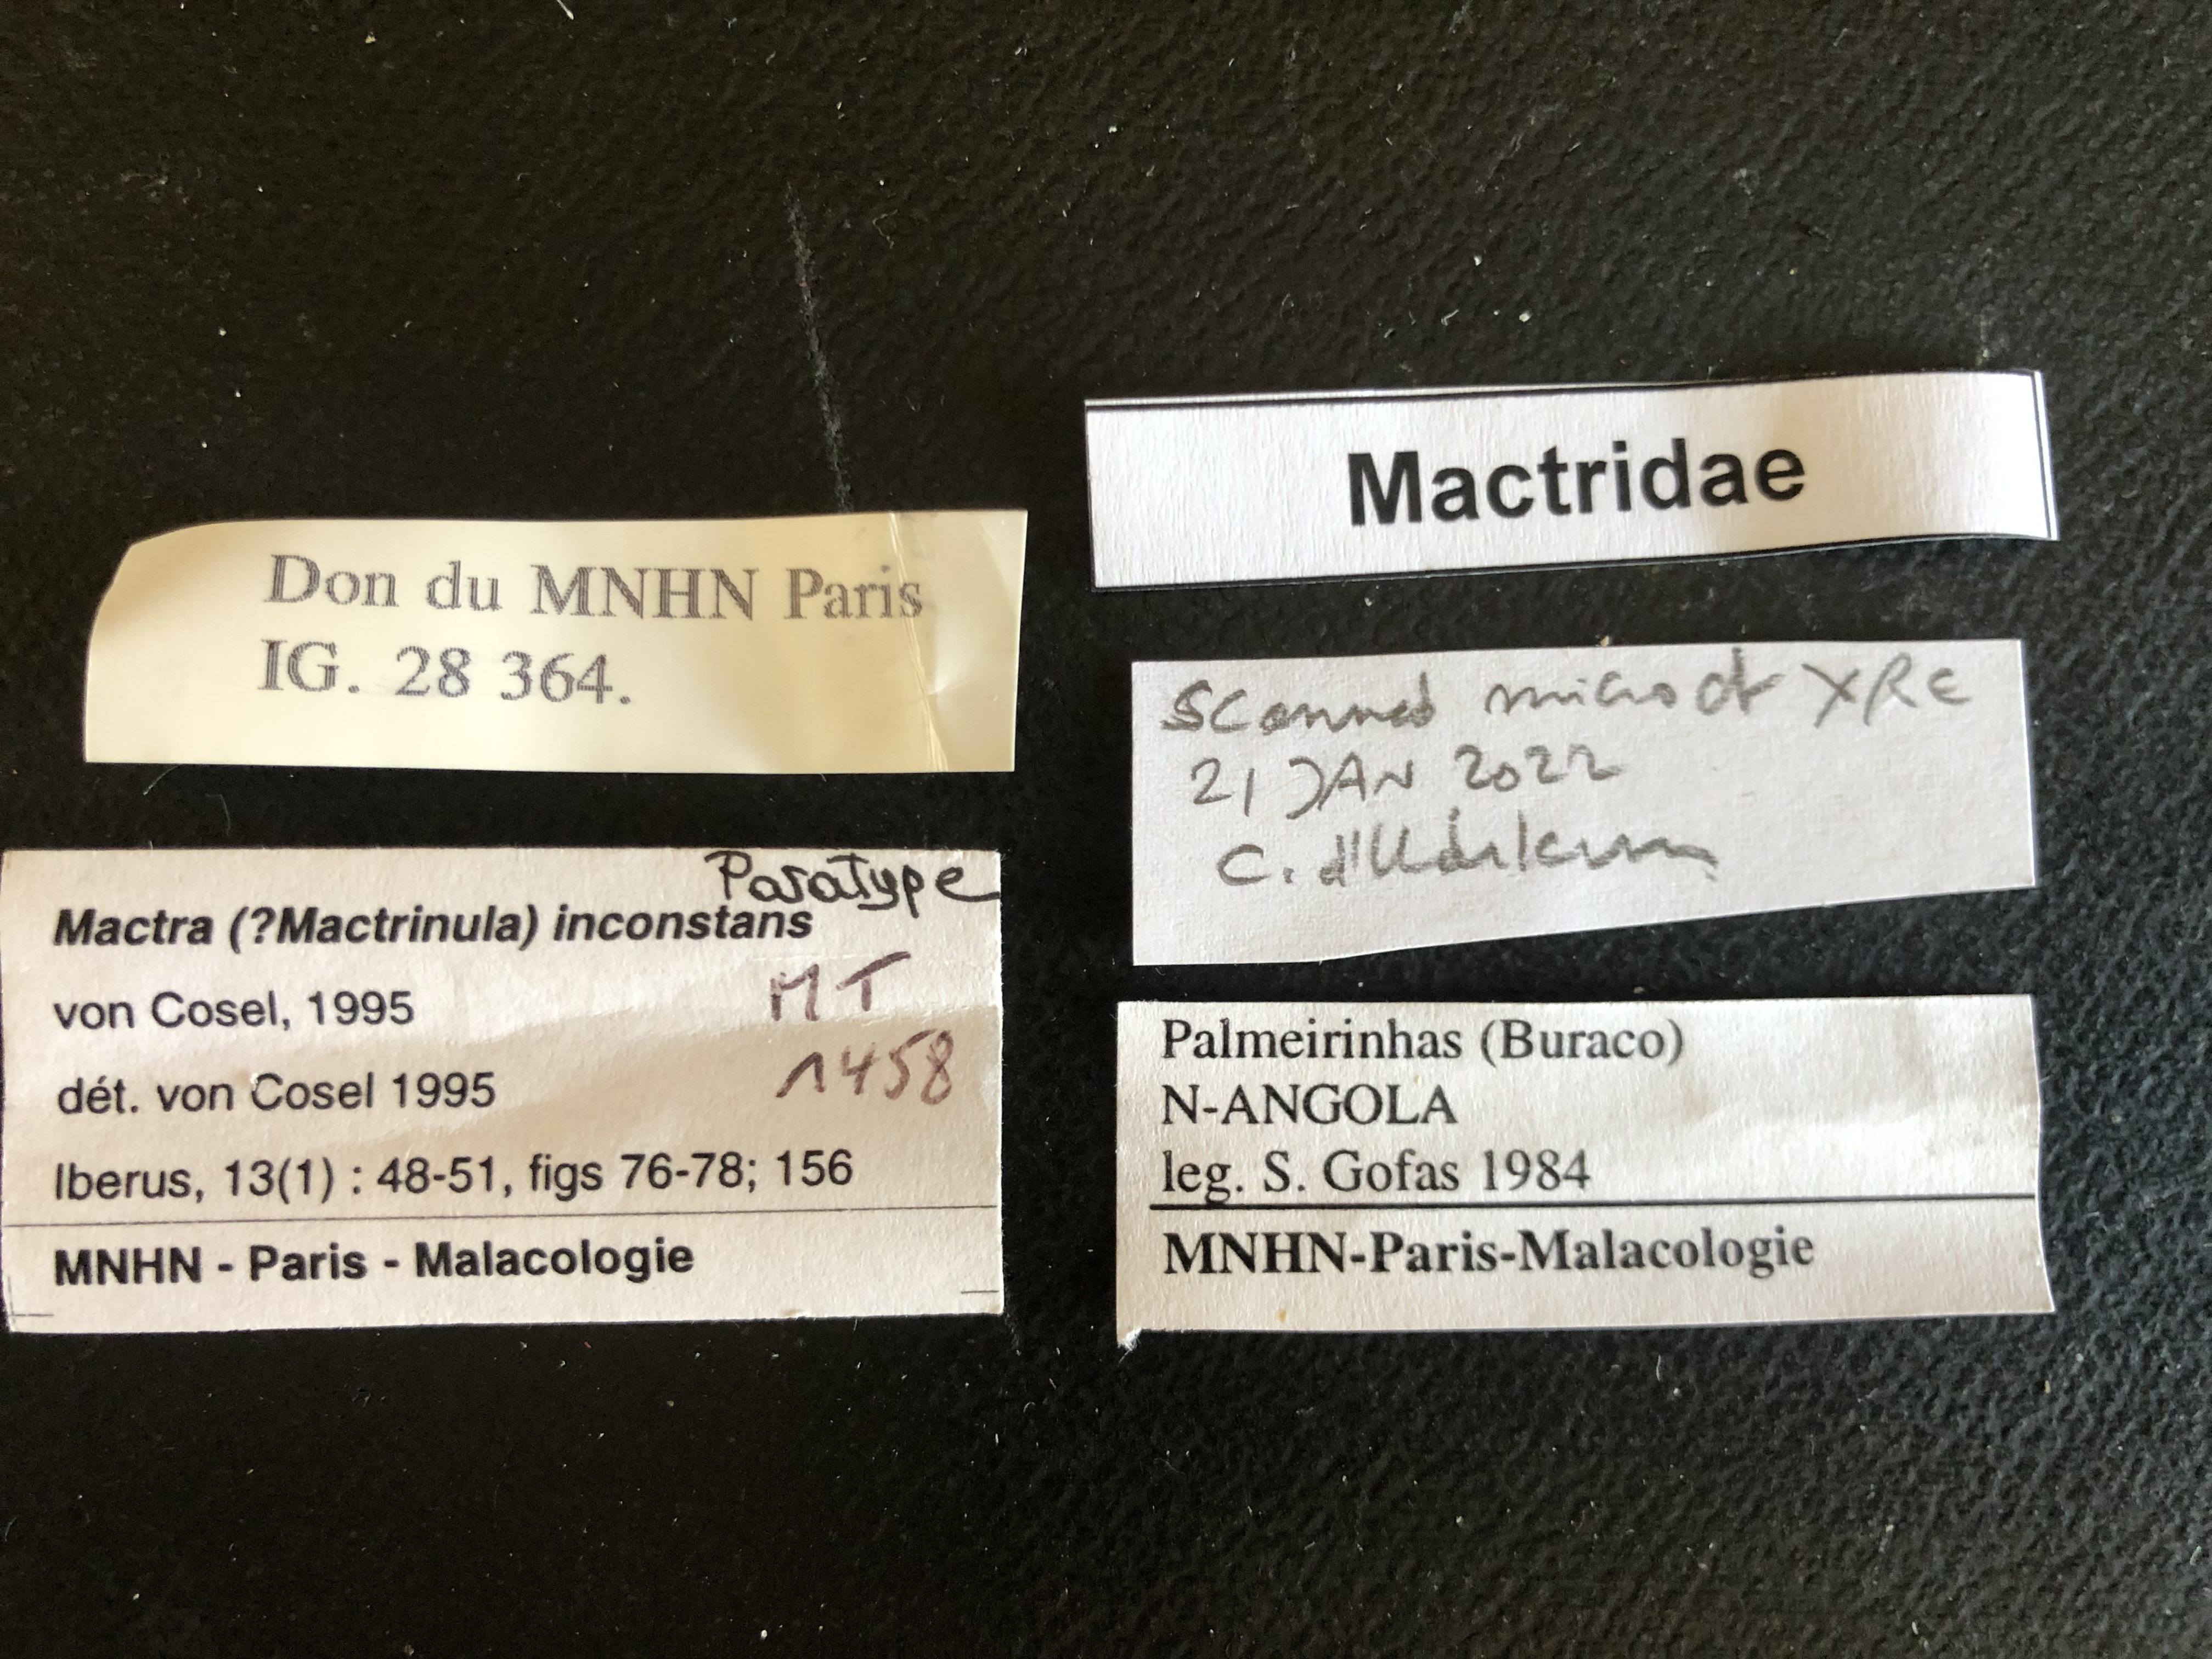 MT 1458 Mactra (? Mactrinula) inconstans Labels